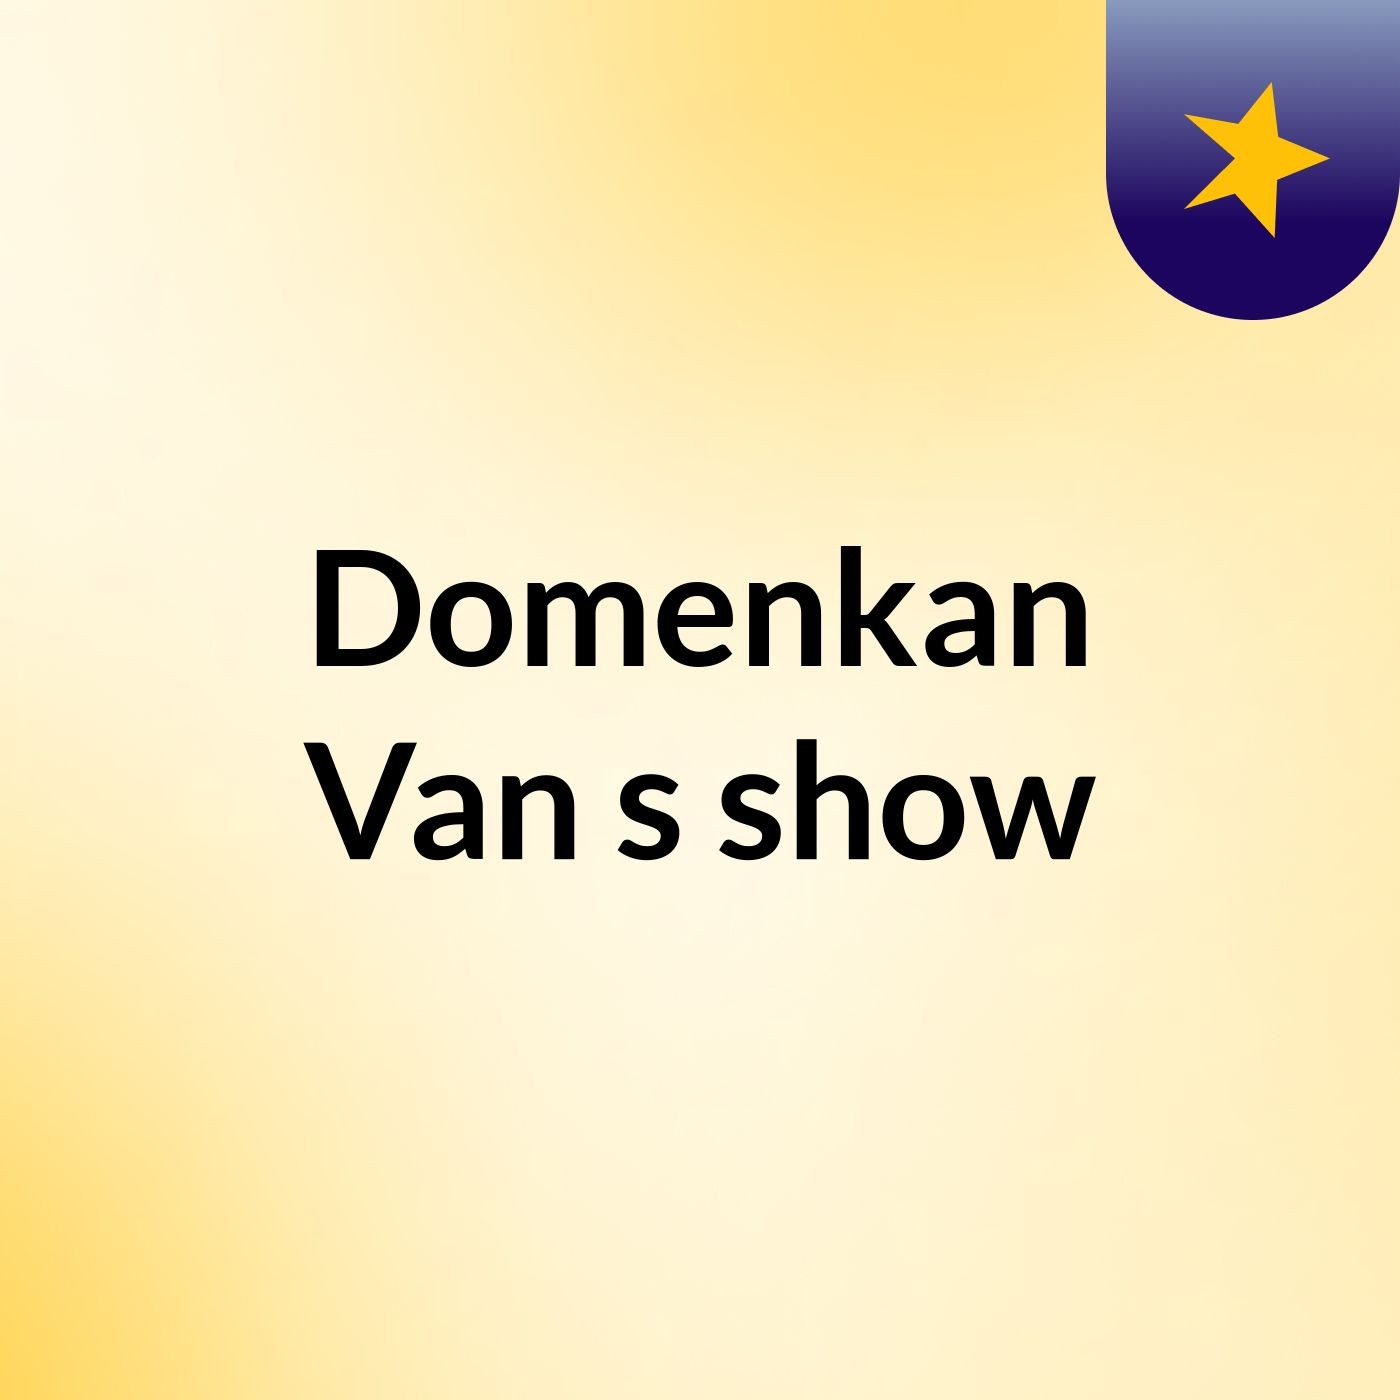 Domenkan Van's show